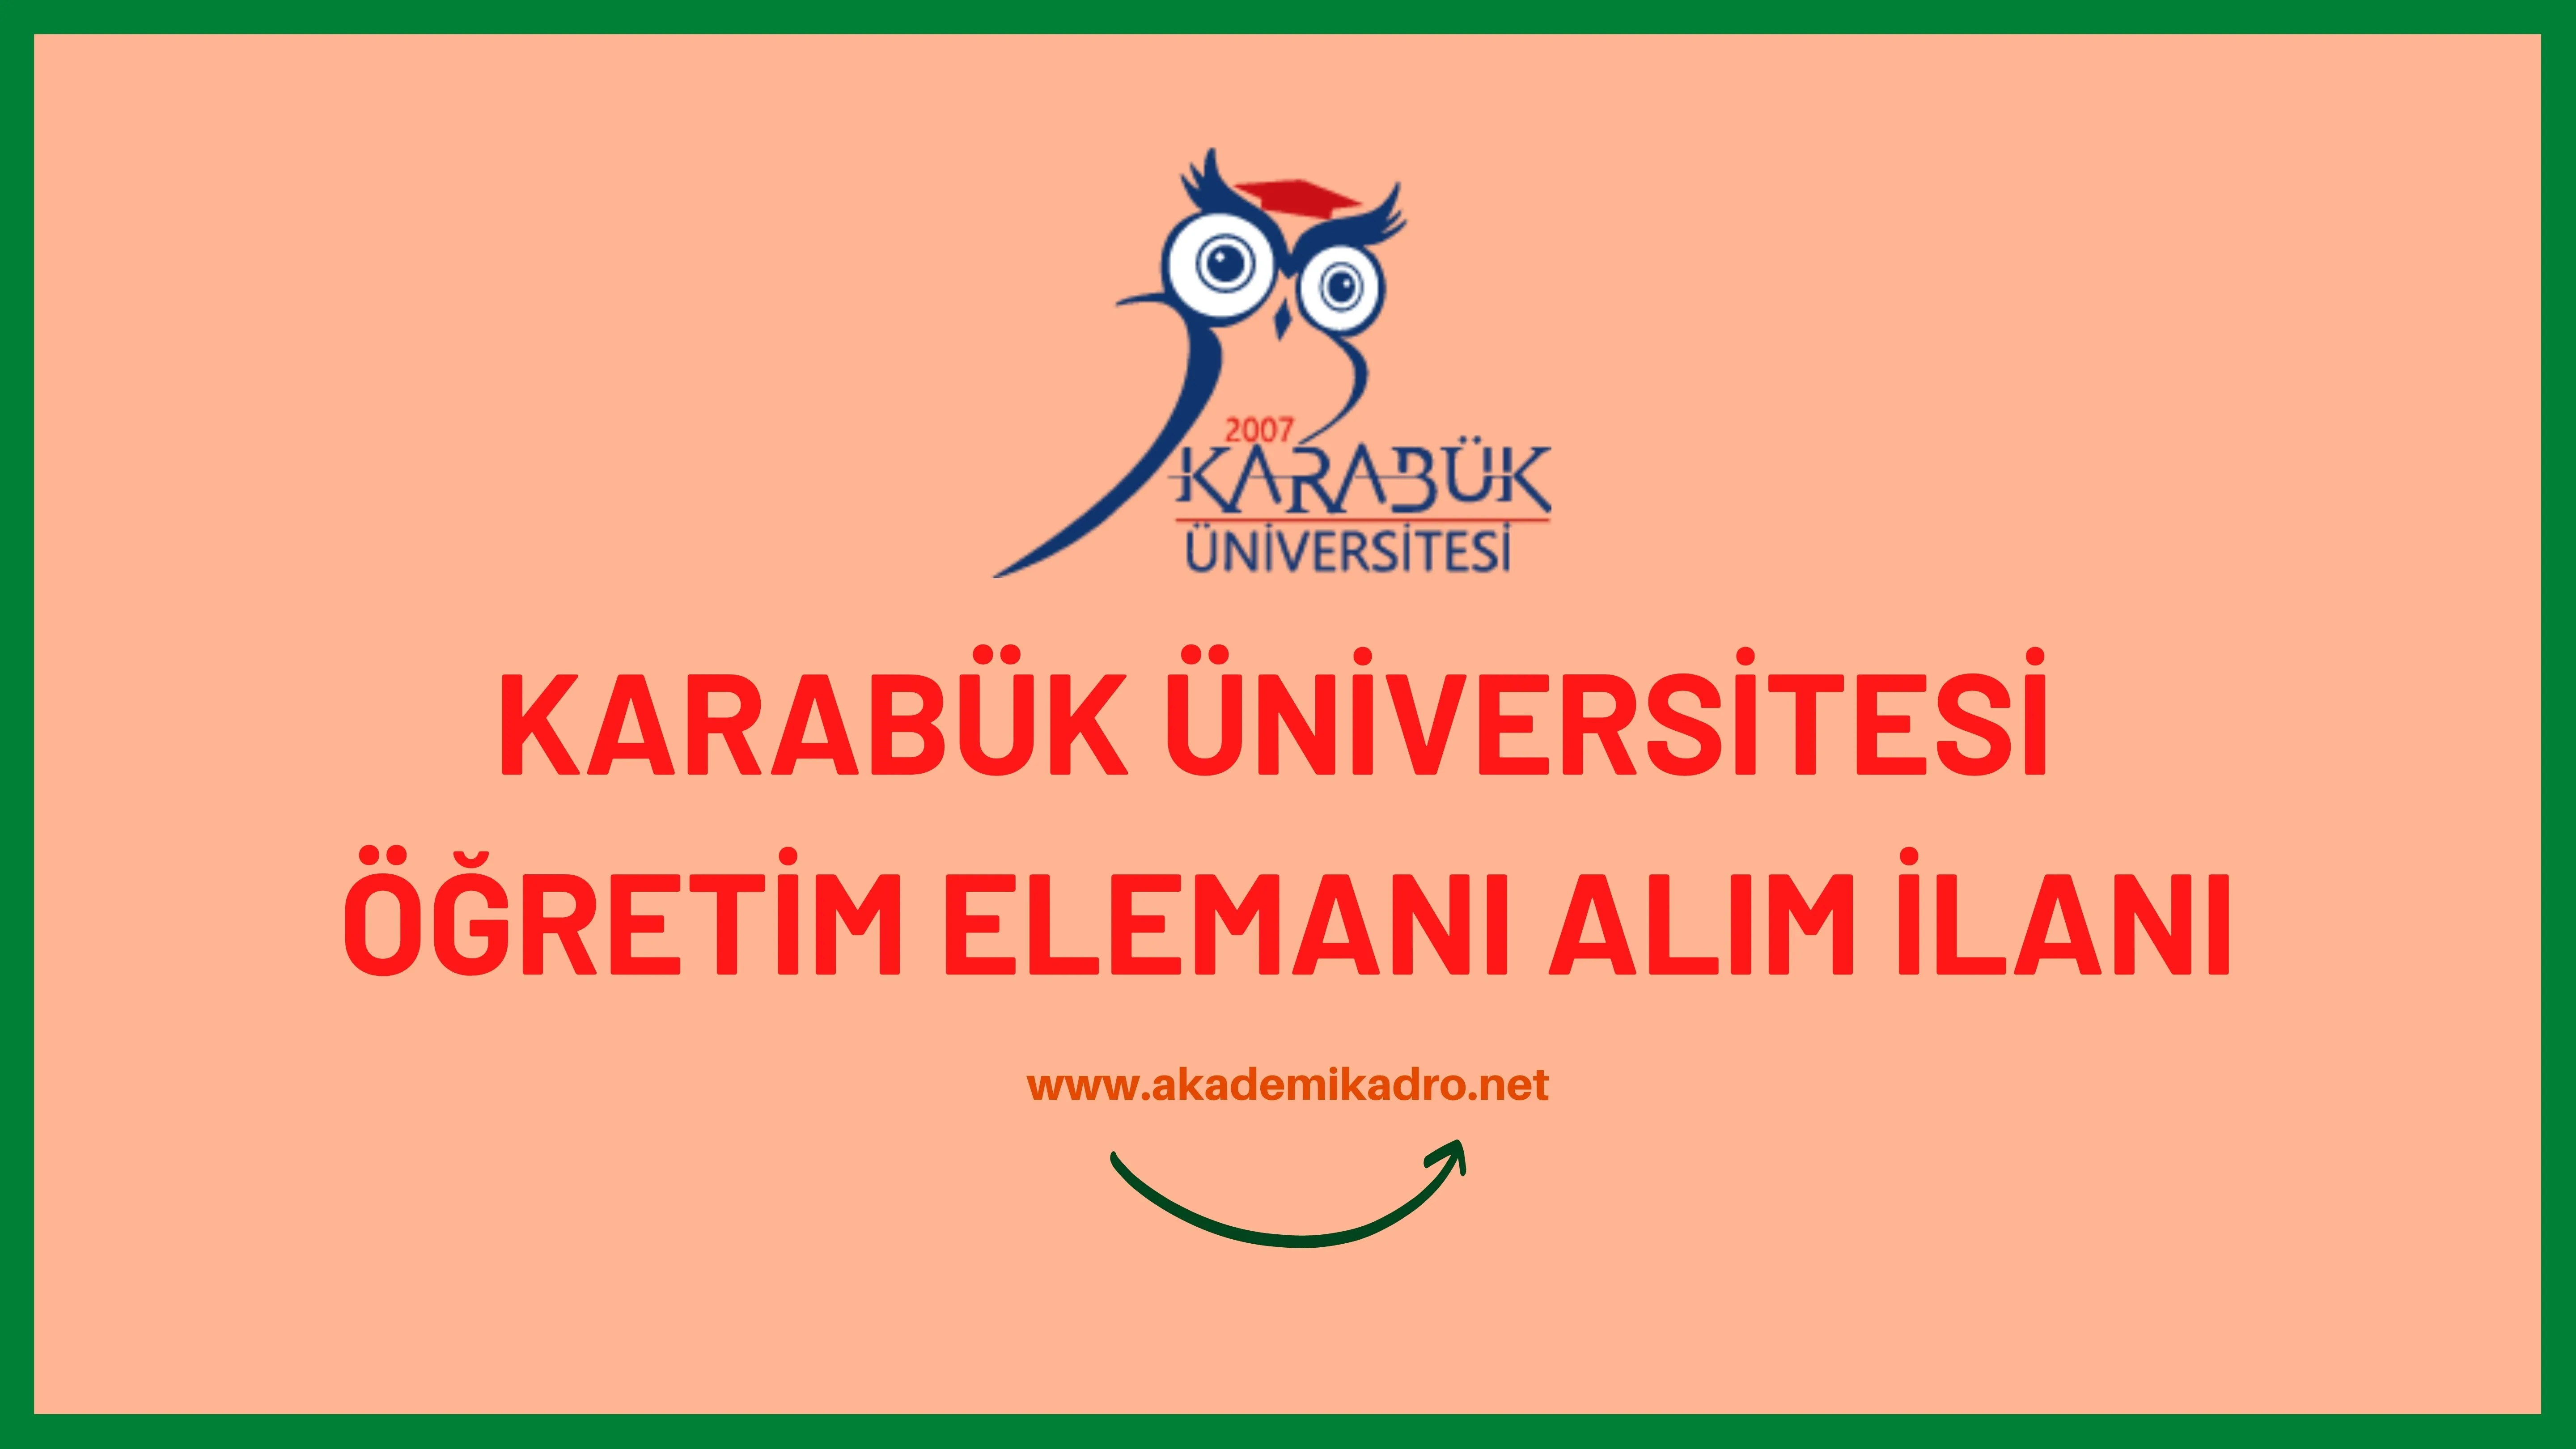 Karabük Üniversitesi 24 öğretim üyesi alacak.